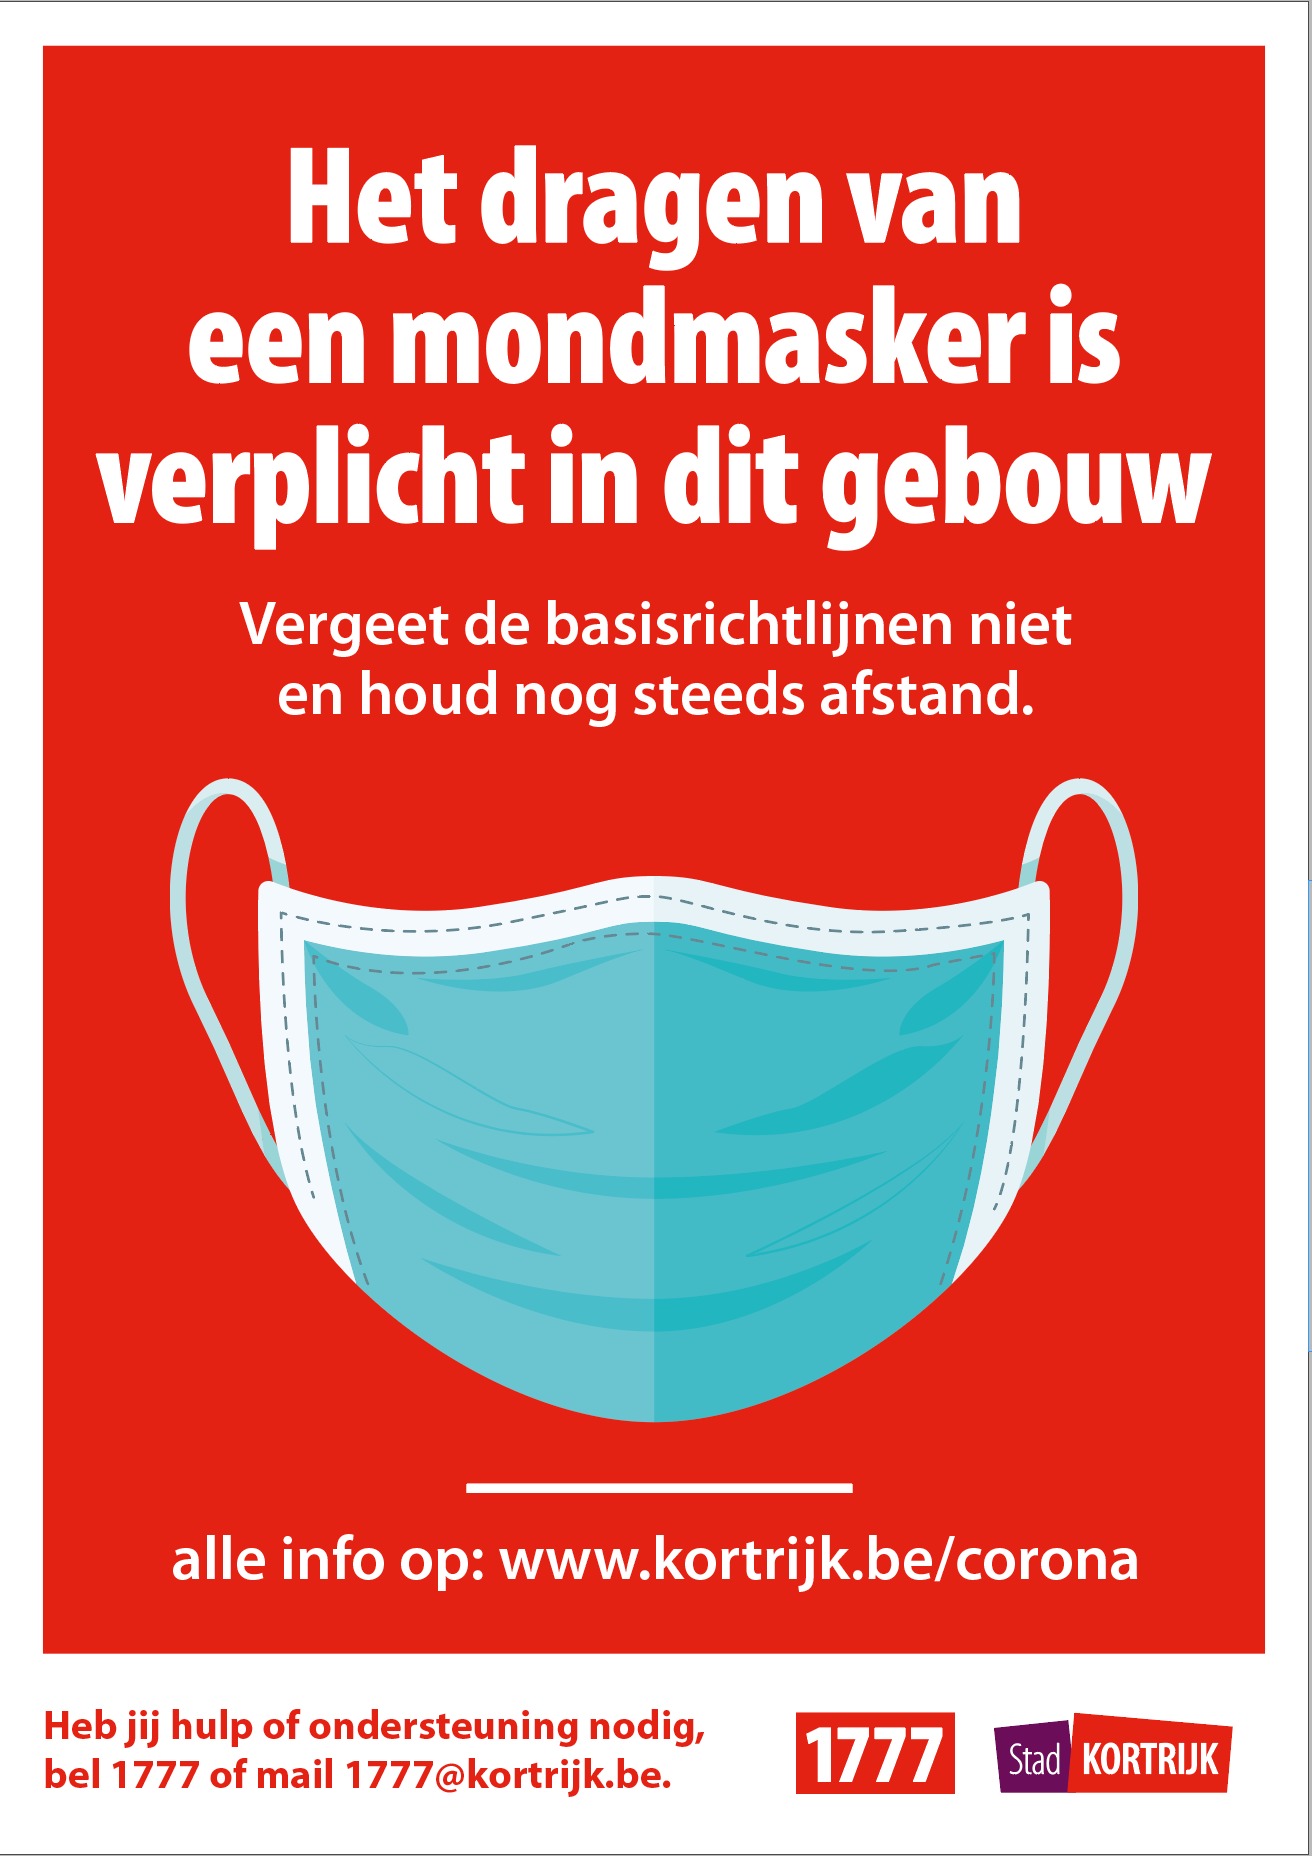 Kortrijk verplicht het dragen van een mondmasker in stadsgebouwen